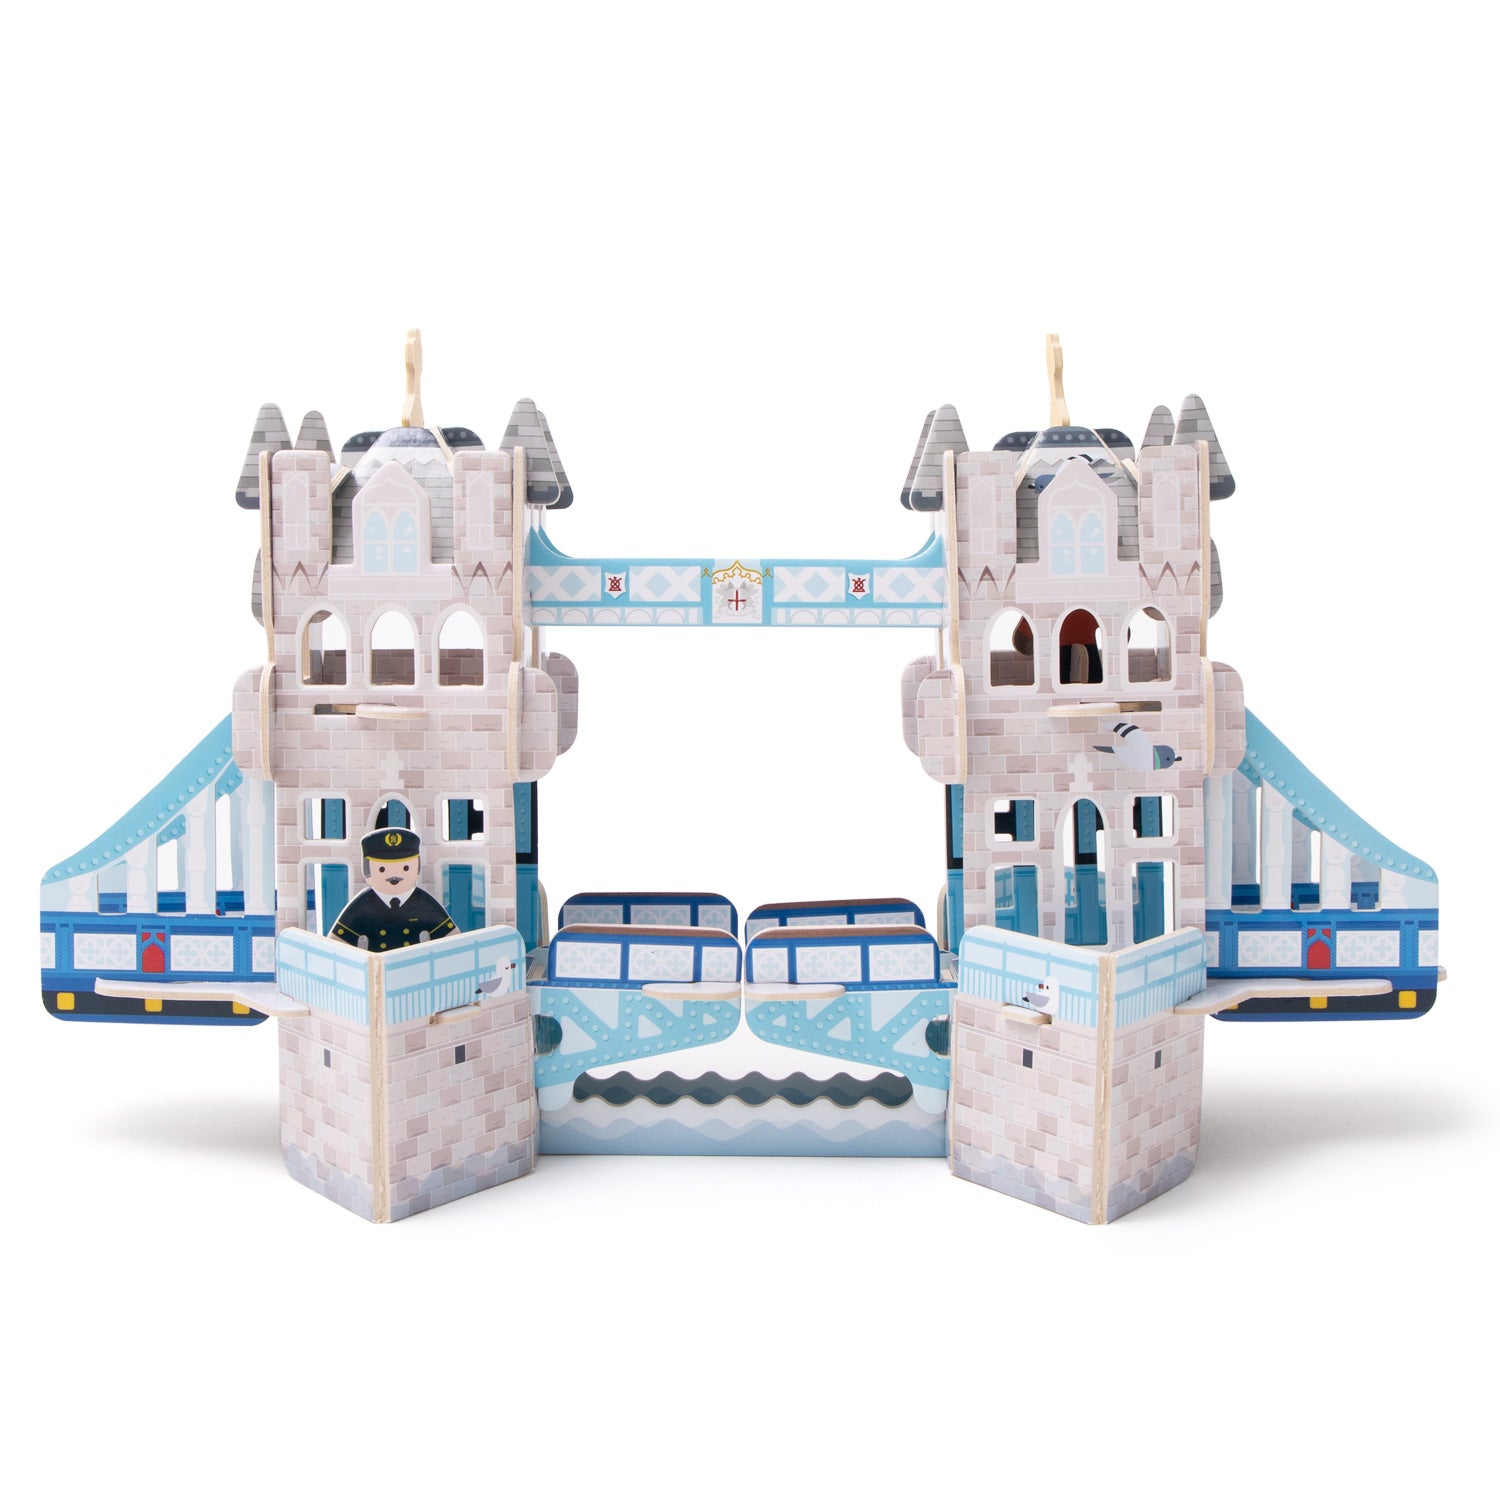 Puzzle 3D Ravensburger Tower Bridge 216 pièces 